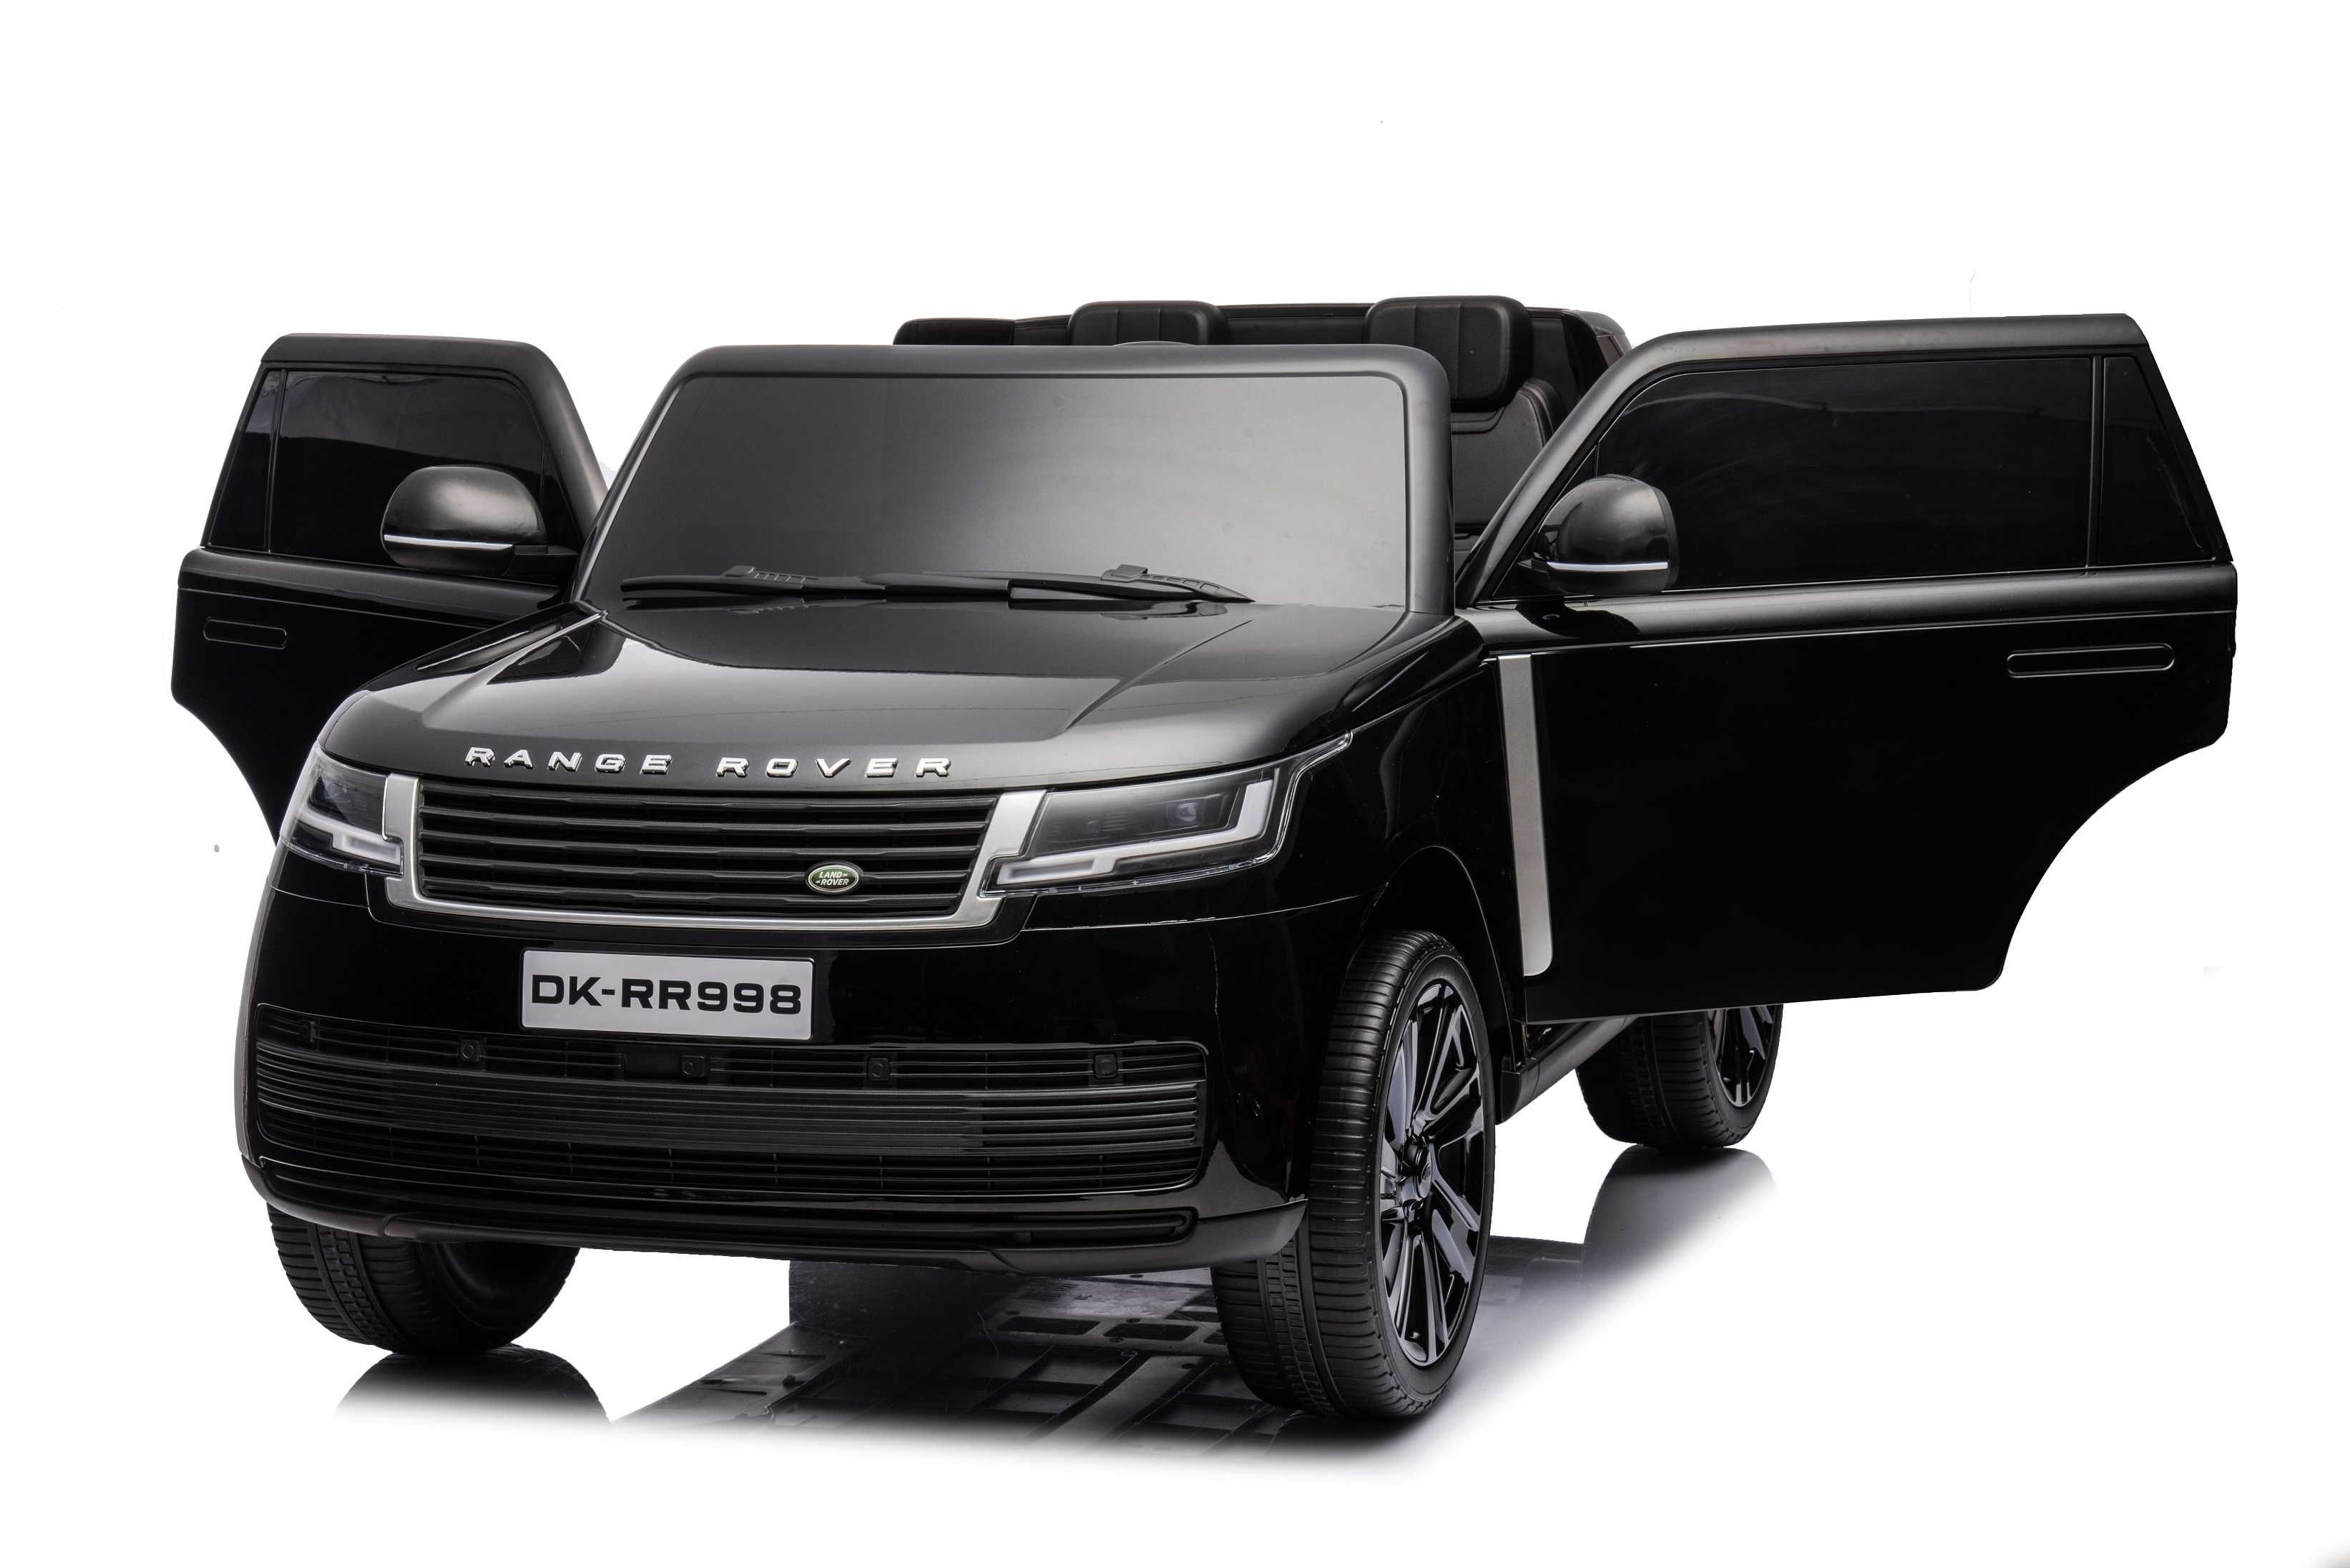 Masinuta electrica pentru 2 copii Range Rover 4x4 160W 12V 14Ah, Negru